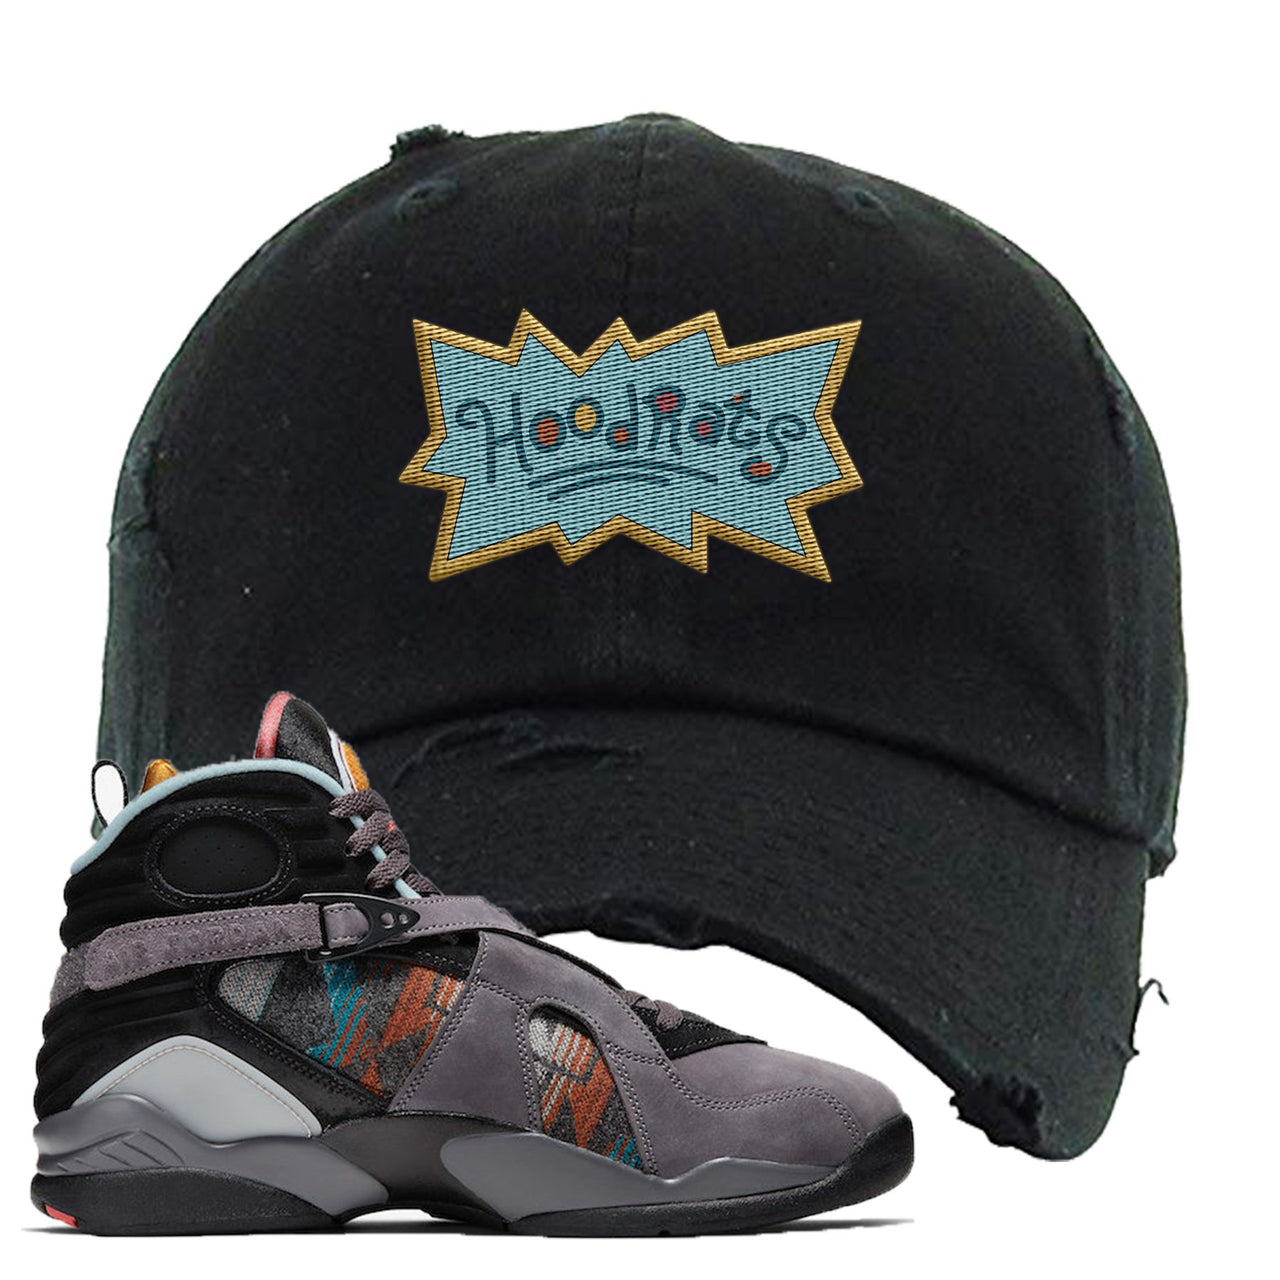 Jordan 8 N7 Pendleton Hood Rats Black Sneaker Hook Up Distressed Dad Hat